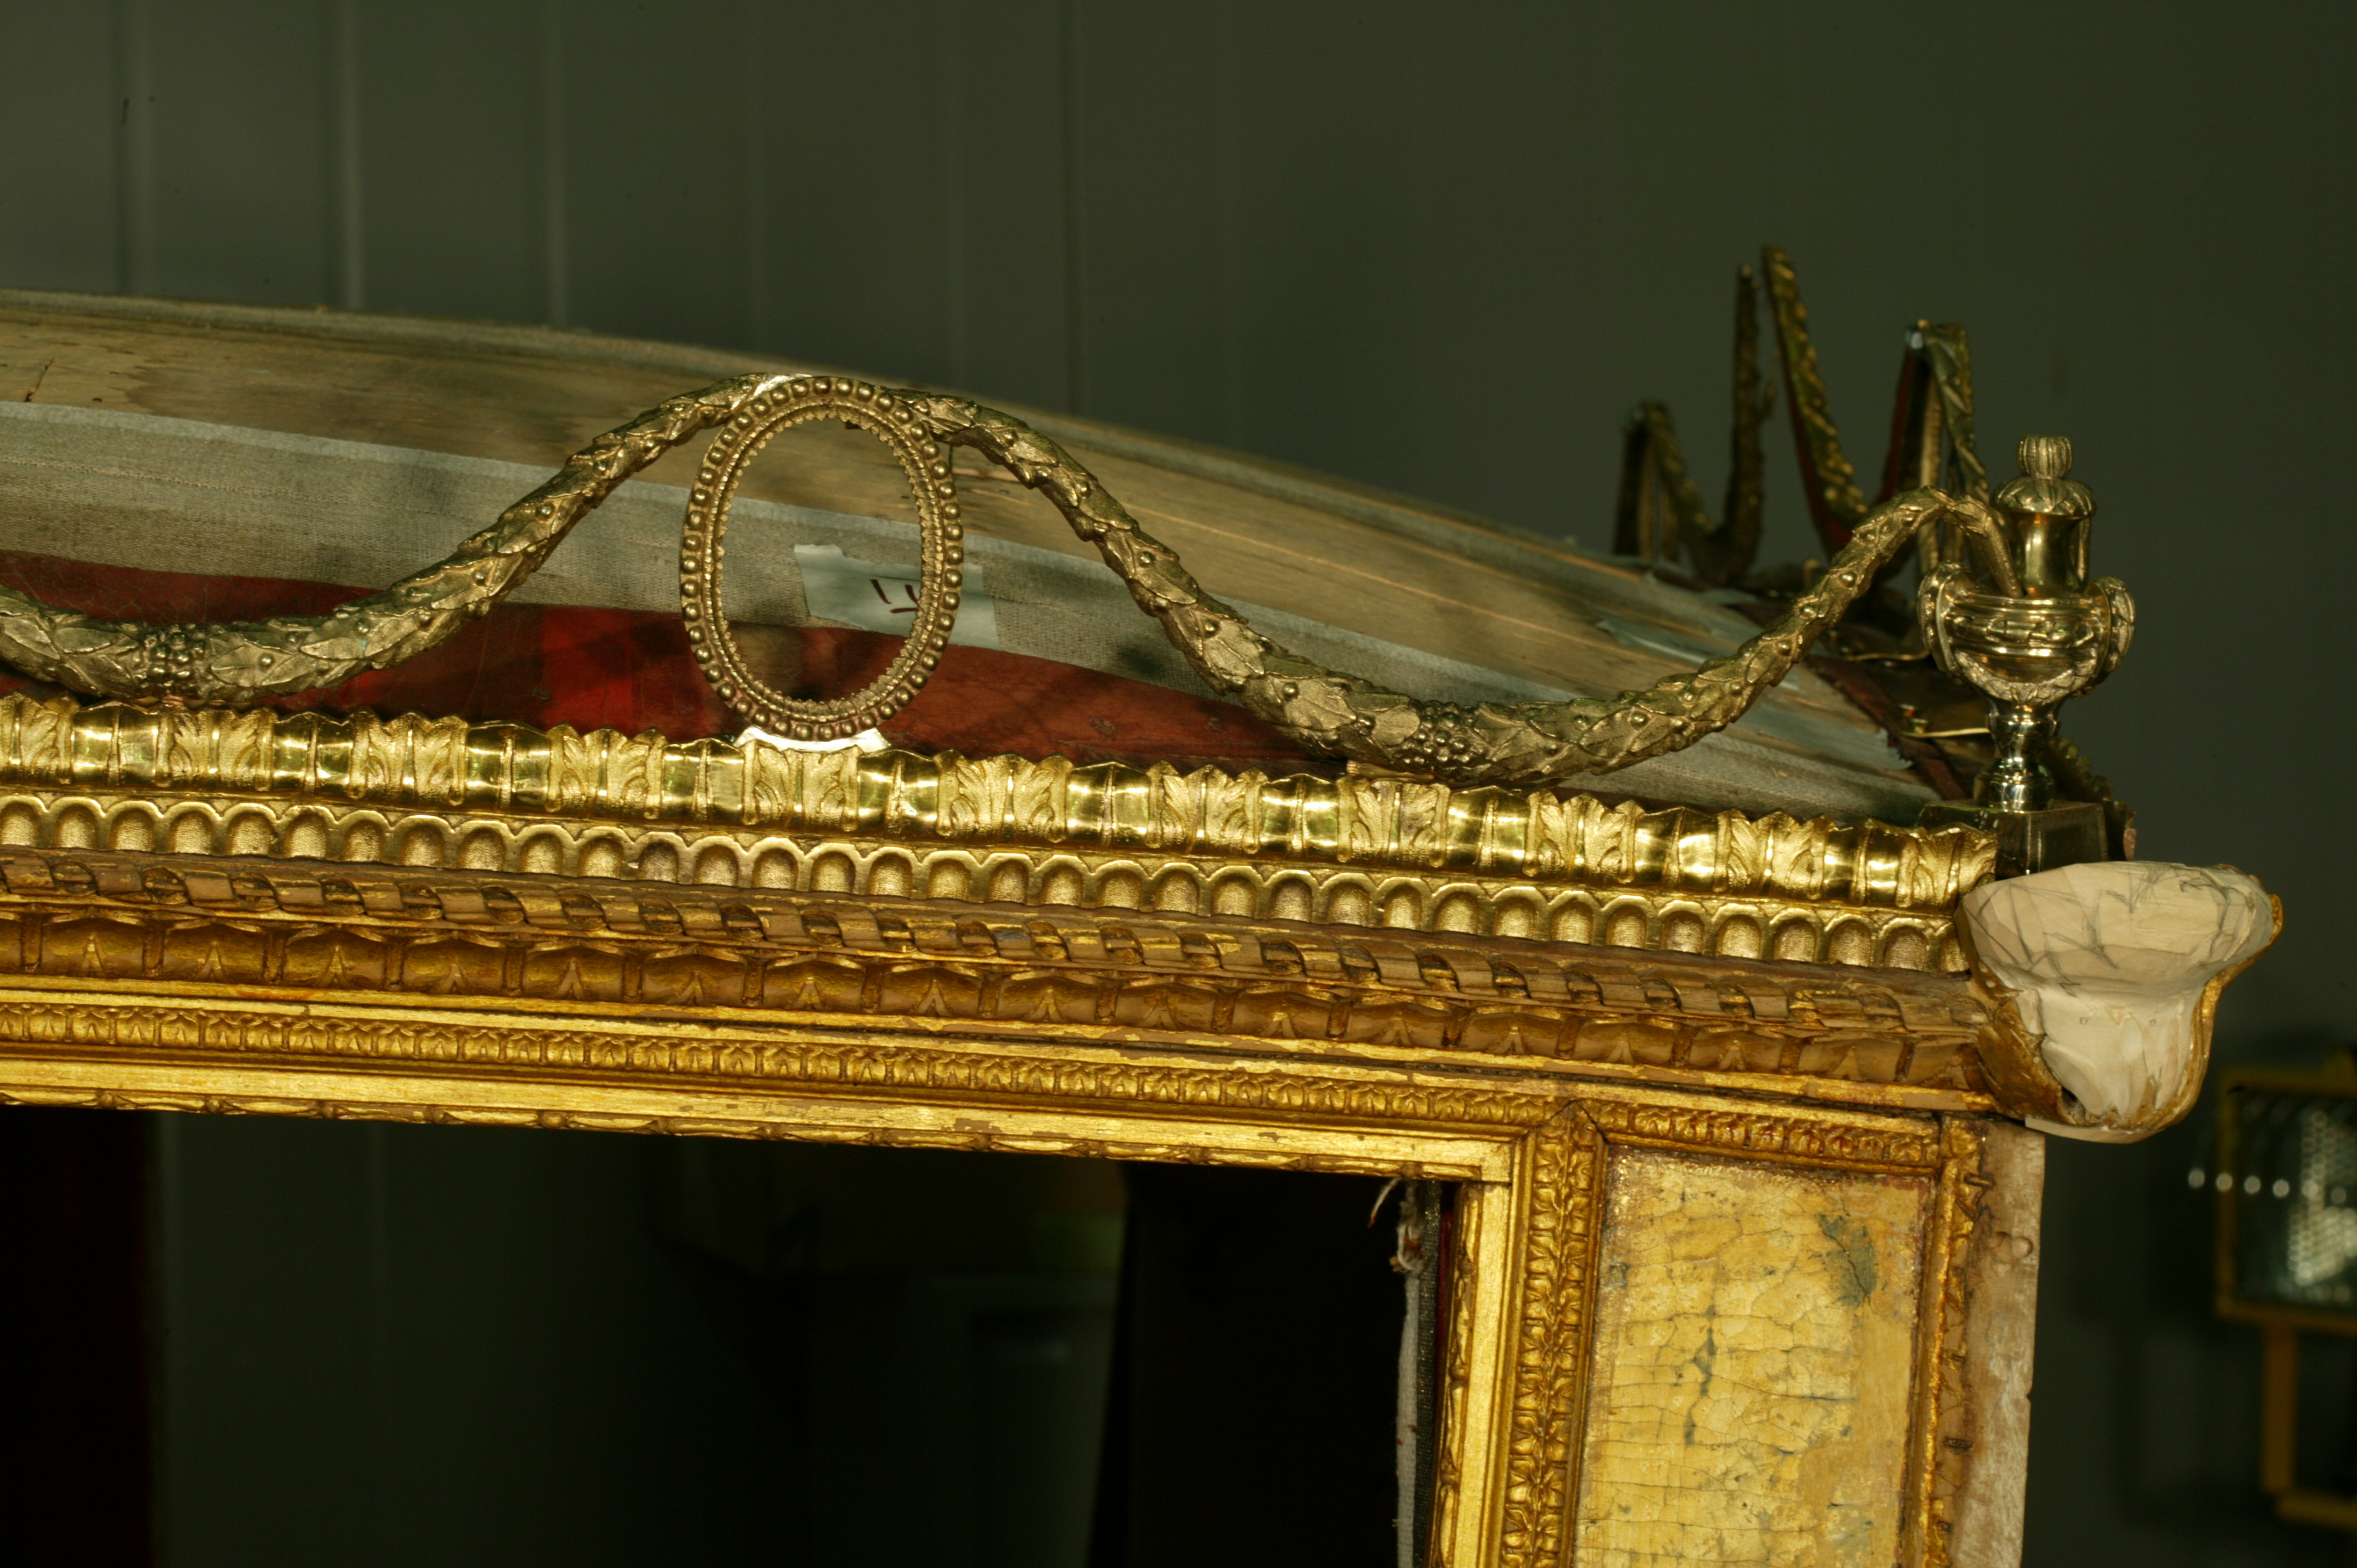 Фрагмент крыши кузова кареты в процессе реставрации: воссоздание бронзовой декоративной балюстрады и утрат резного золоченого декора. 2009